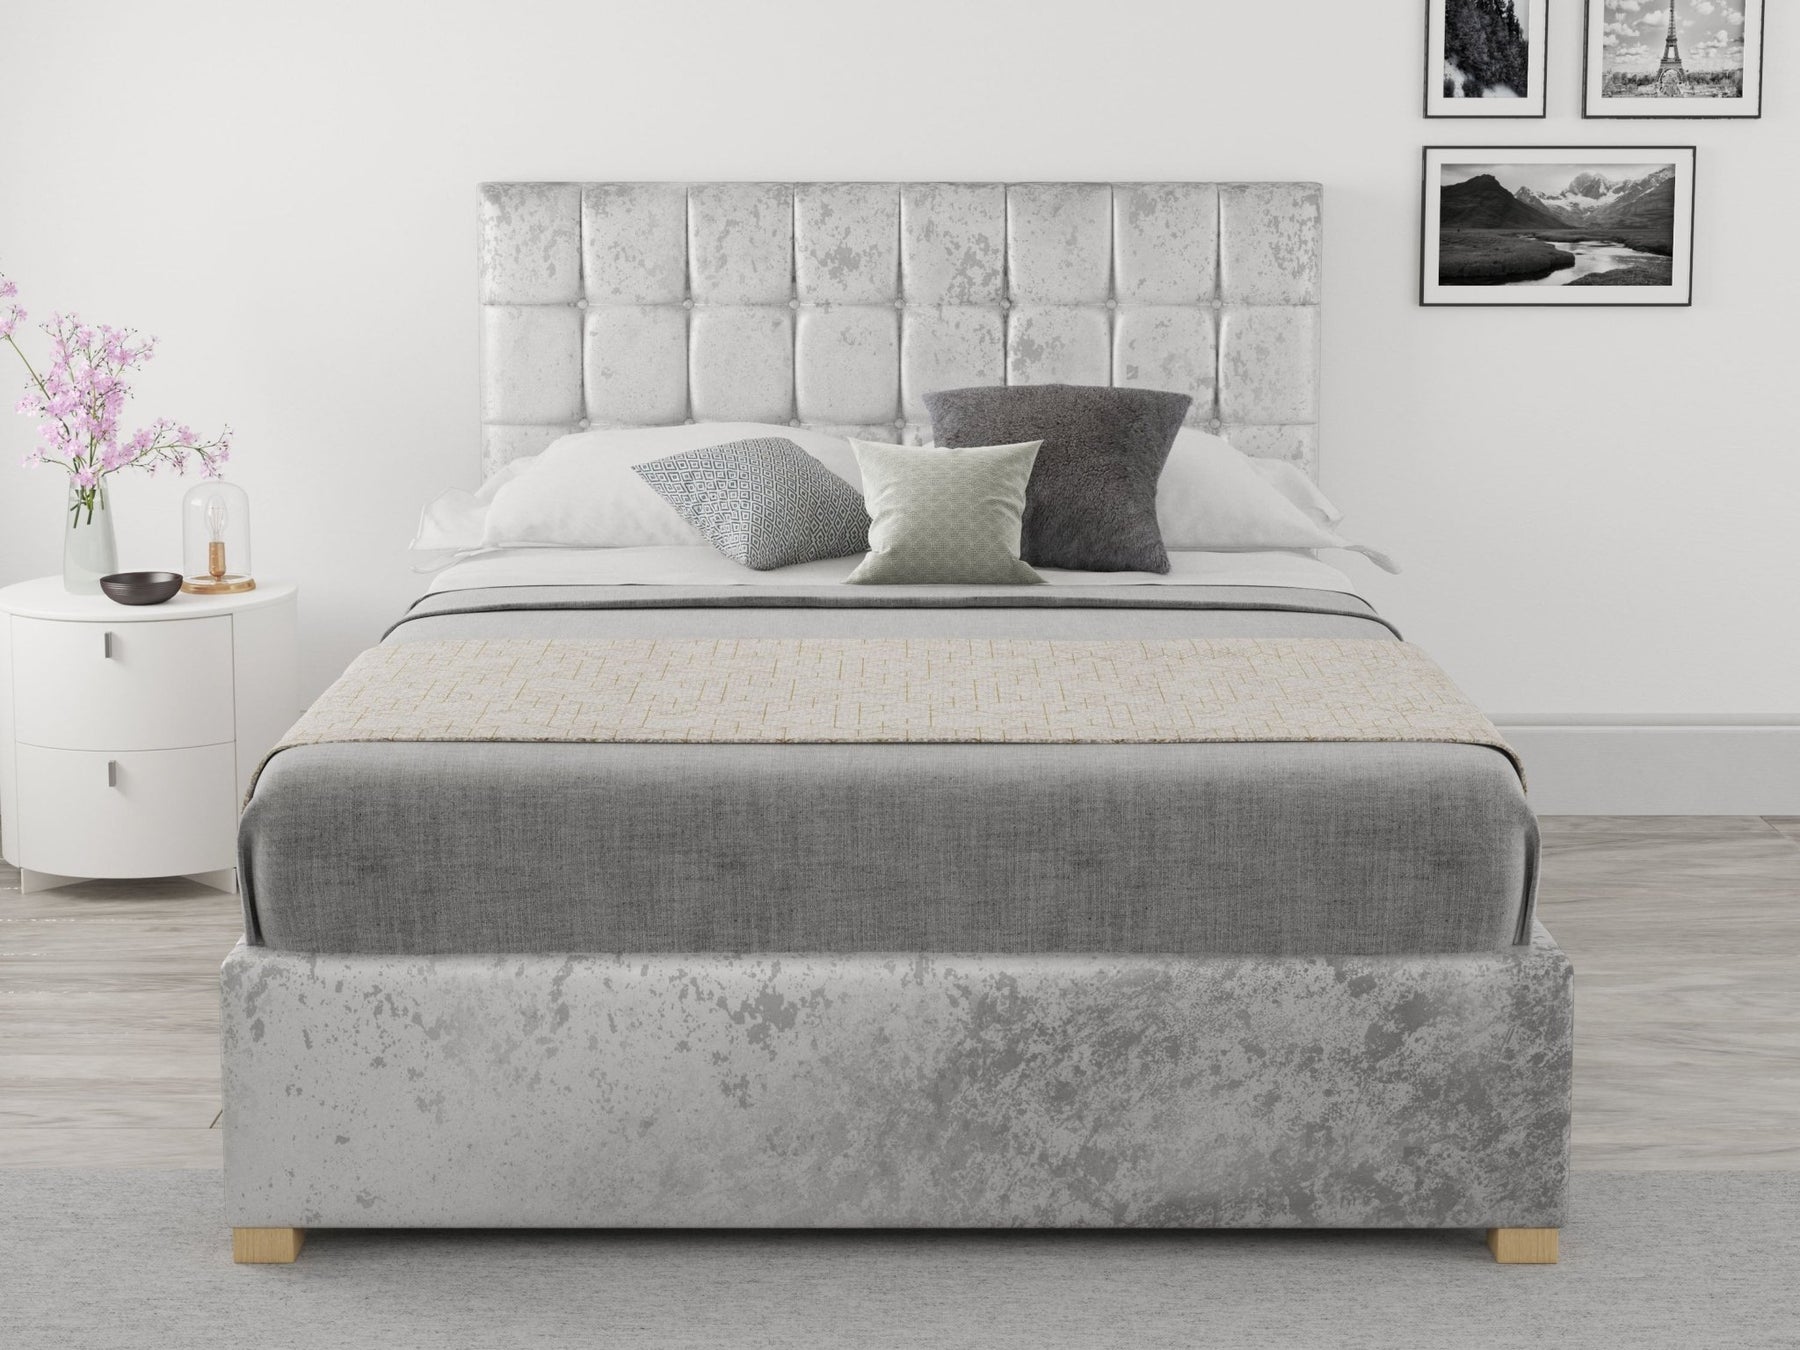 Aspire Furniture - UK based Design-led Manufacturer - Rest Relax